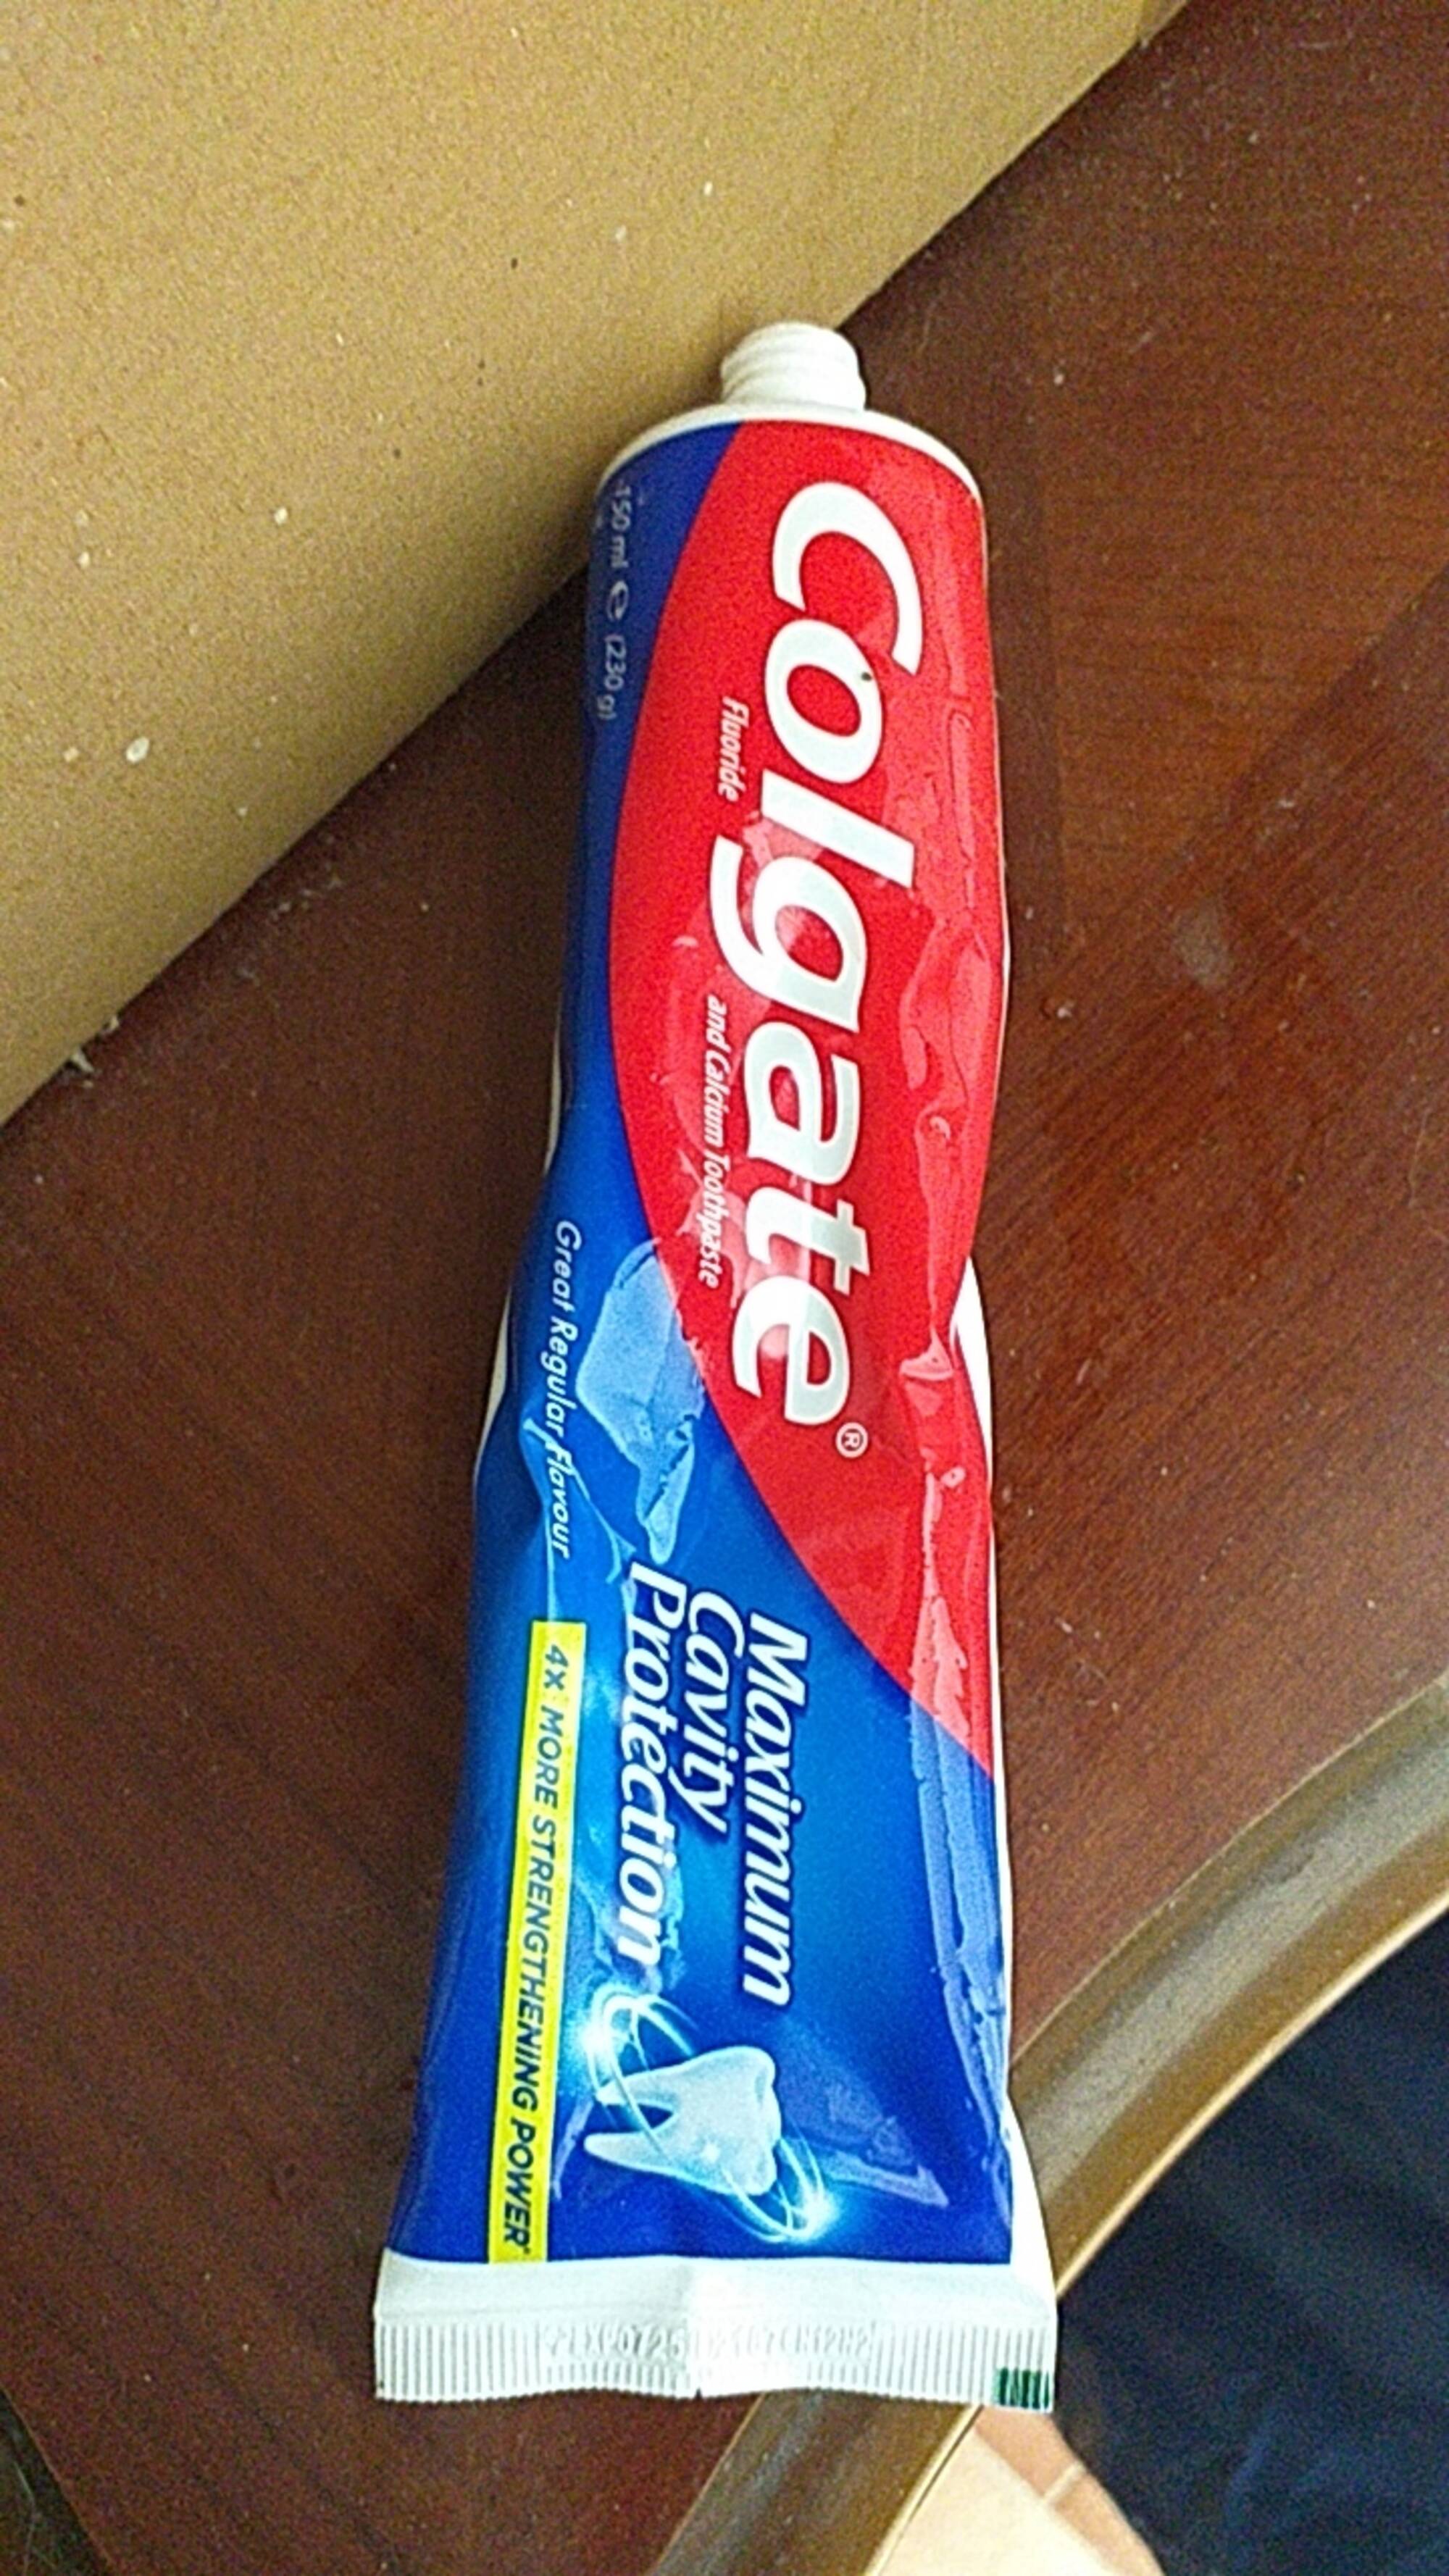 COLGATE - Fluoride and calcium toothpaste